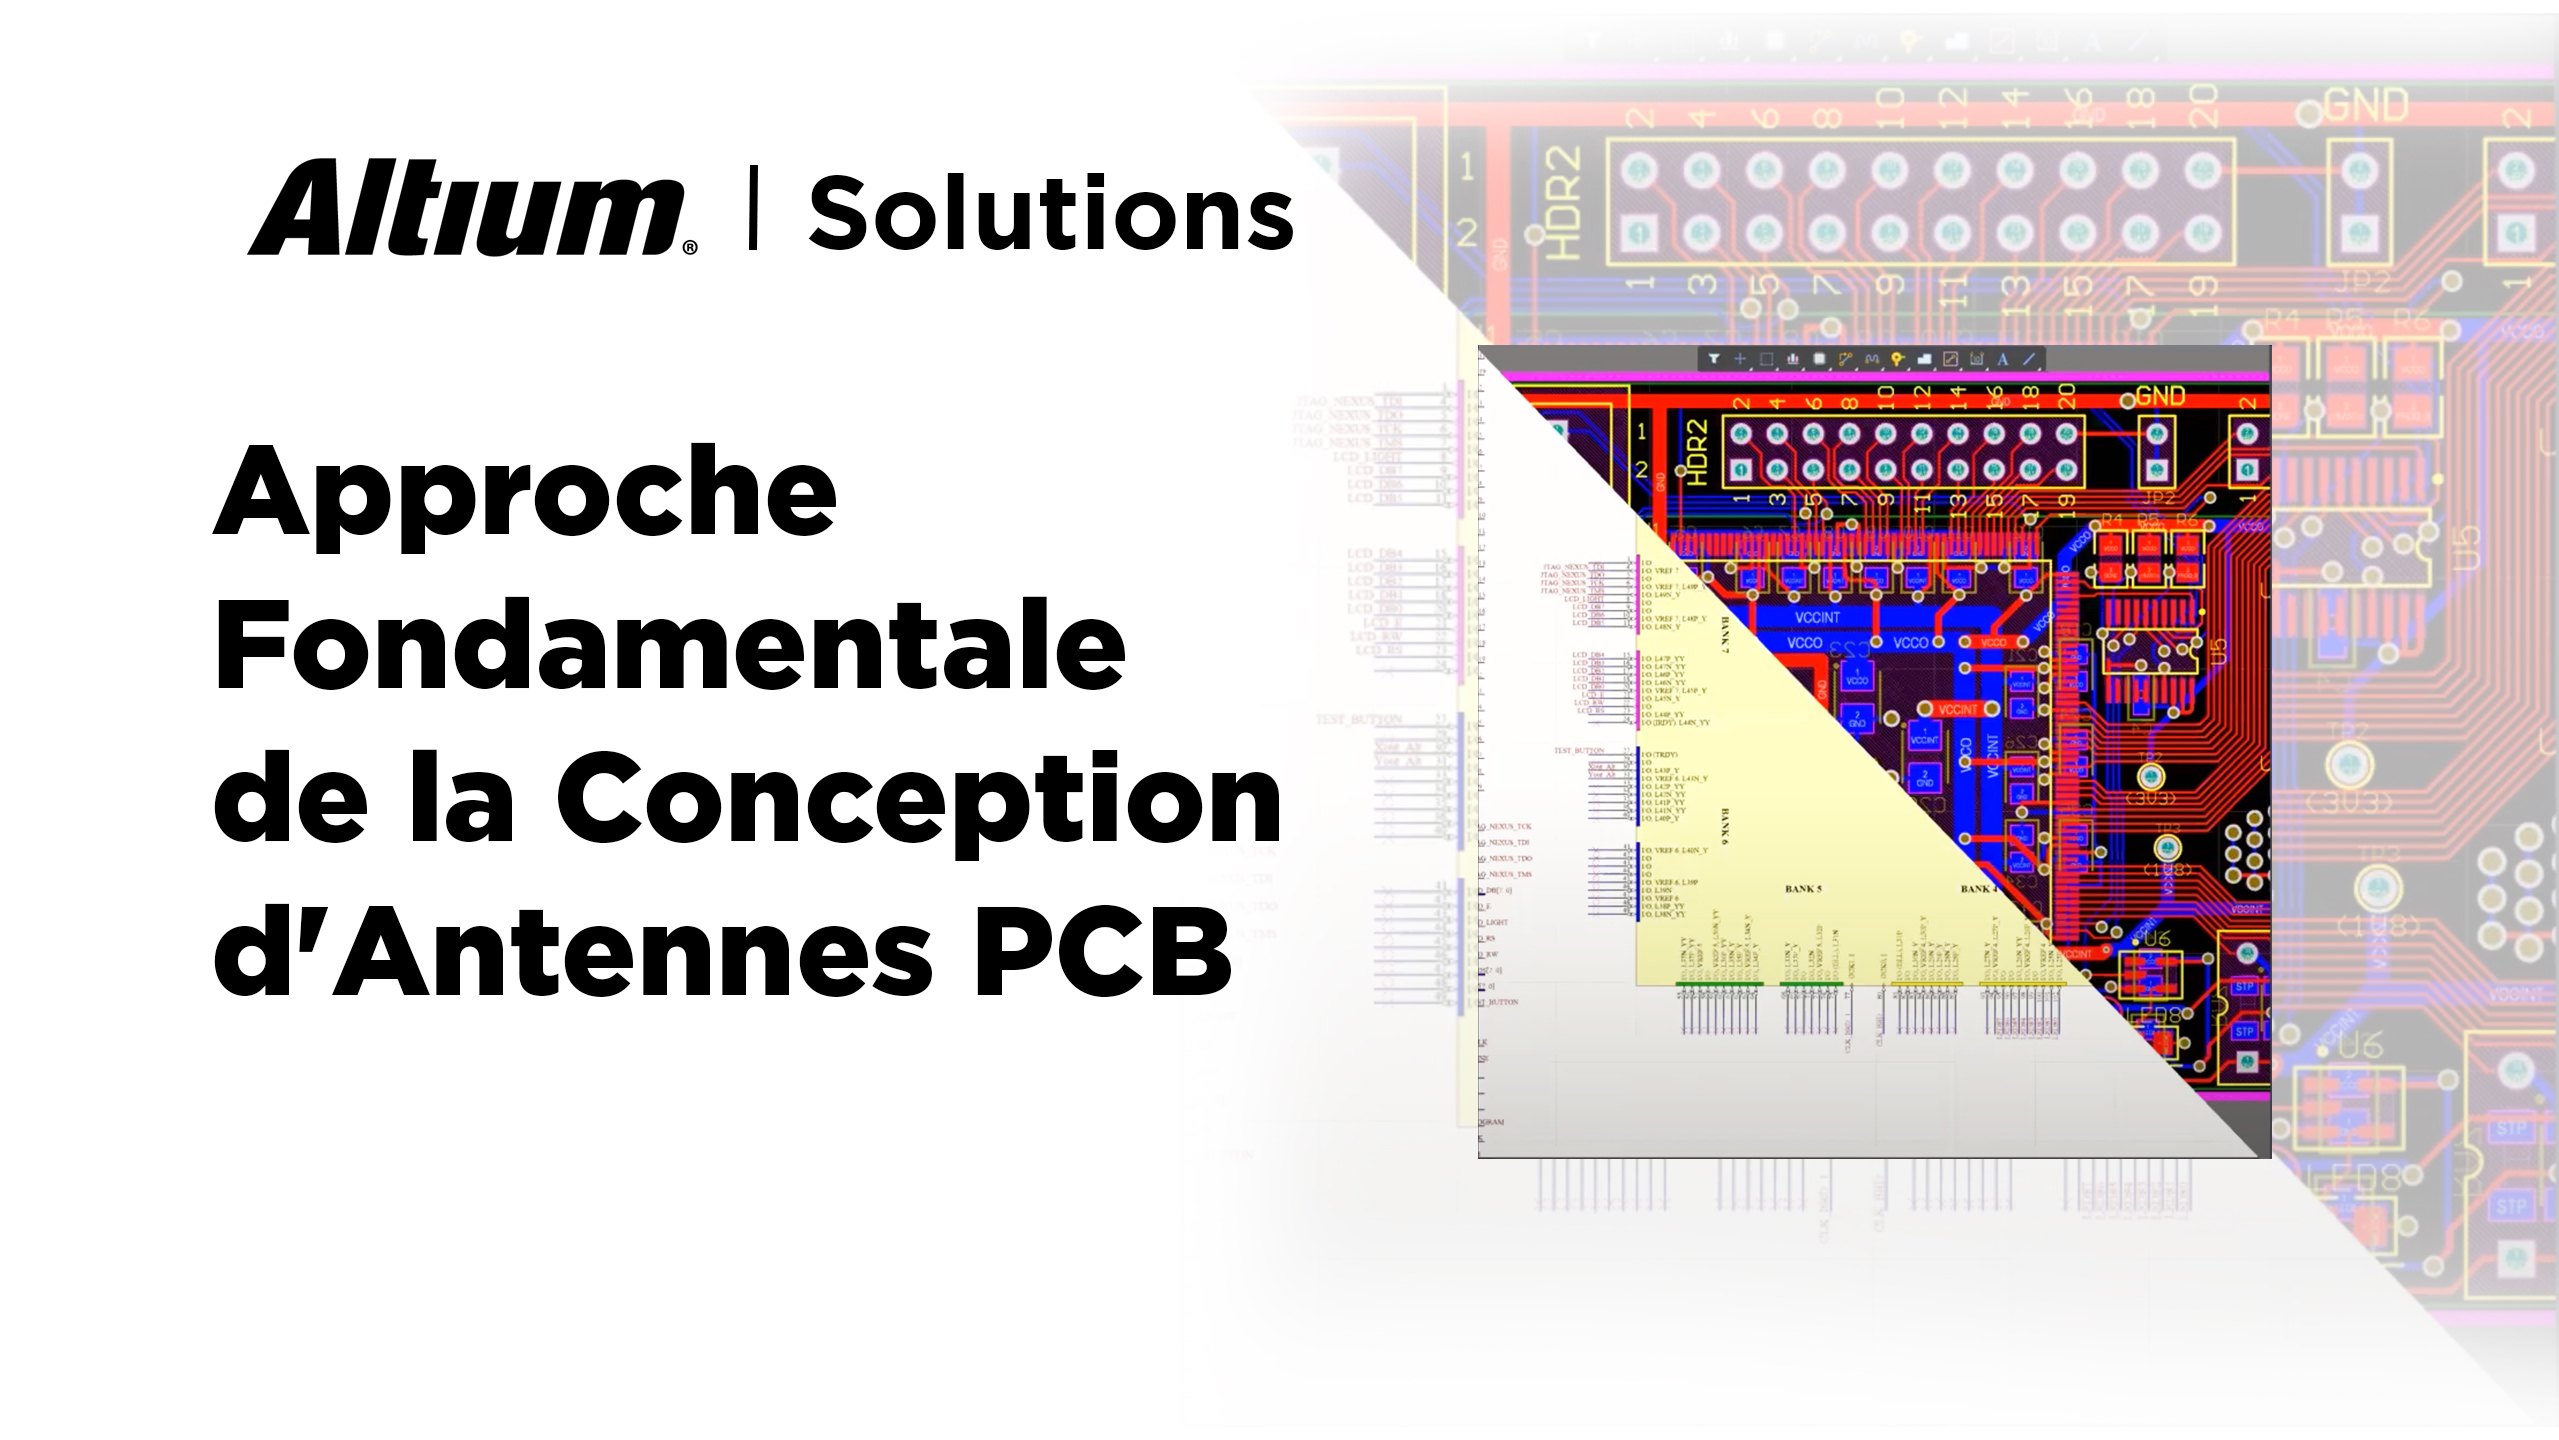 Le meilleur logiciel de conception d'antennes PCB facilite la mise en œuvre des antennes